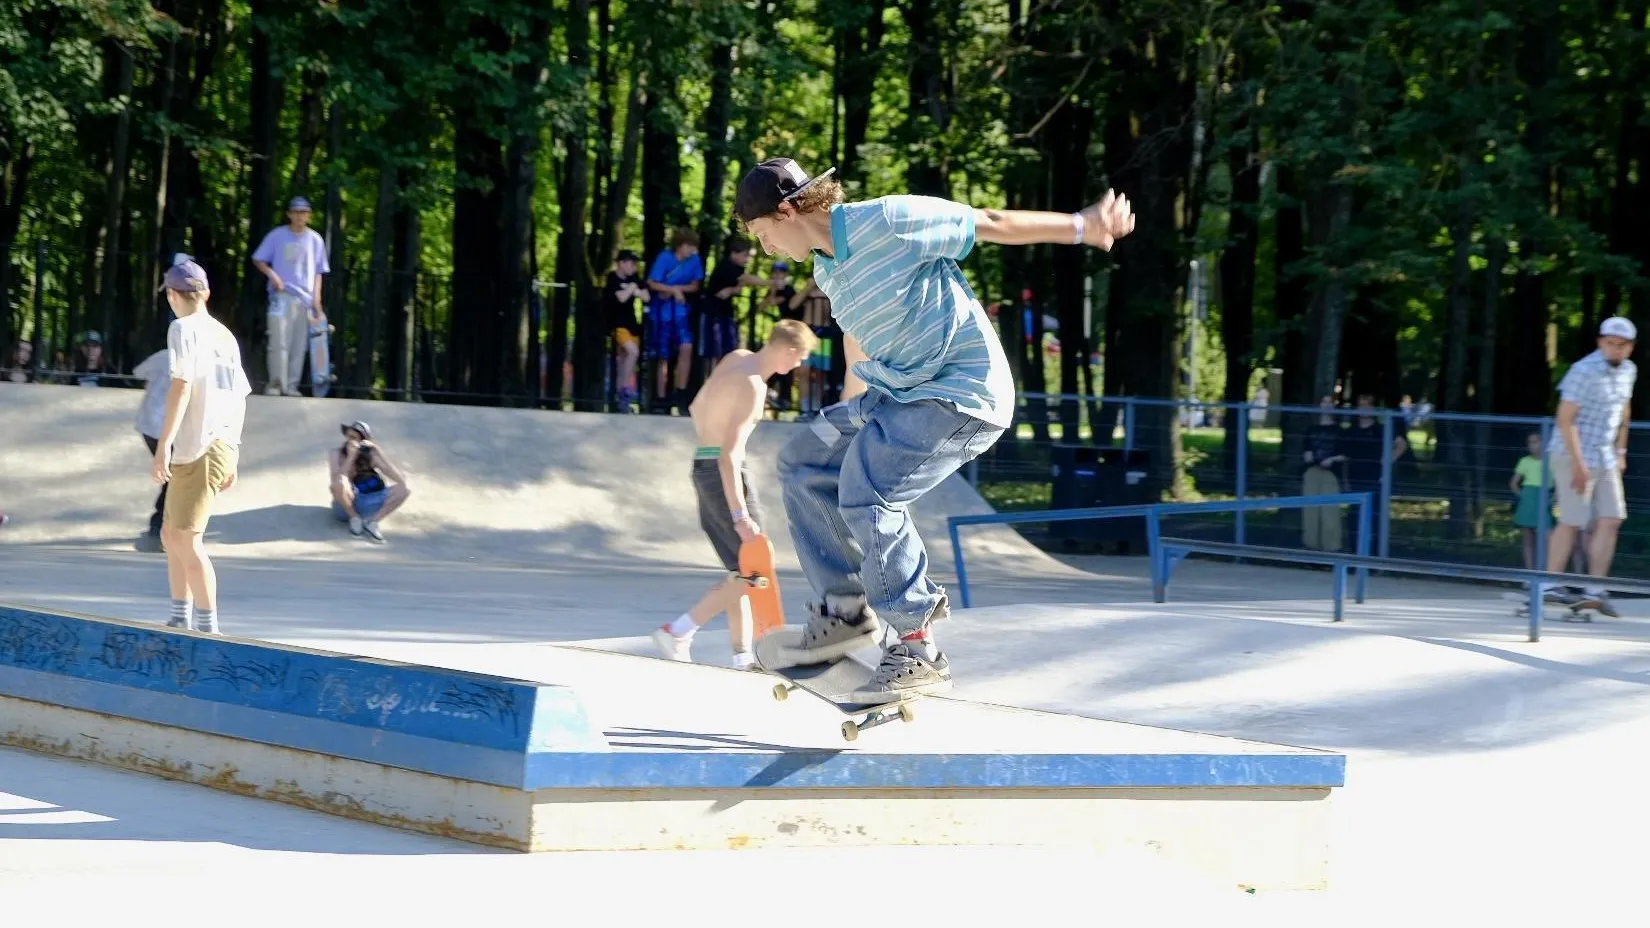 Соревнования по скейтбордингу «Сторона улиц» состоятся в Подмосковье 27 июля